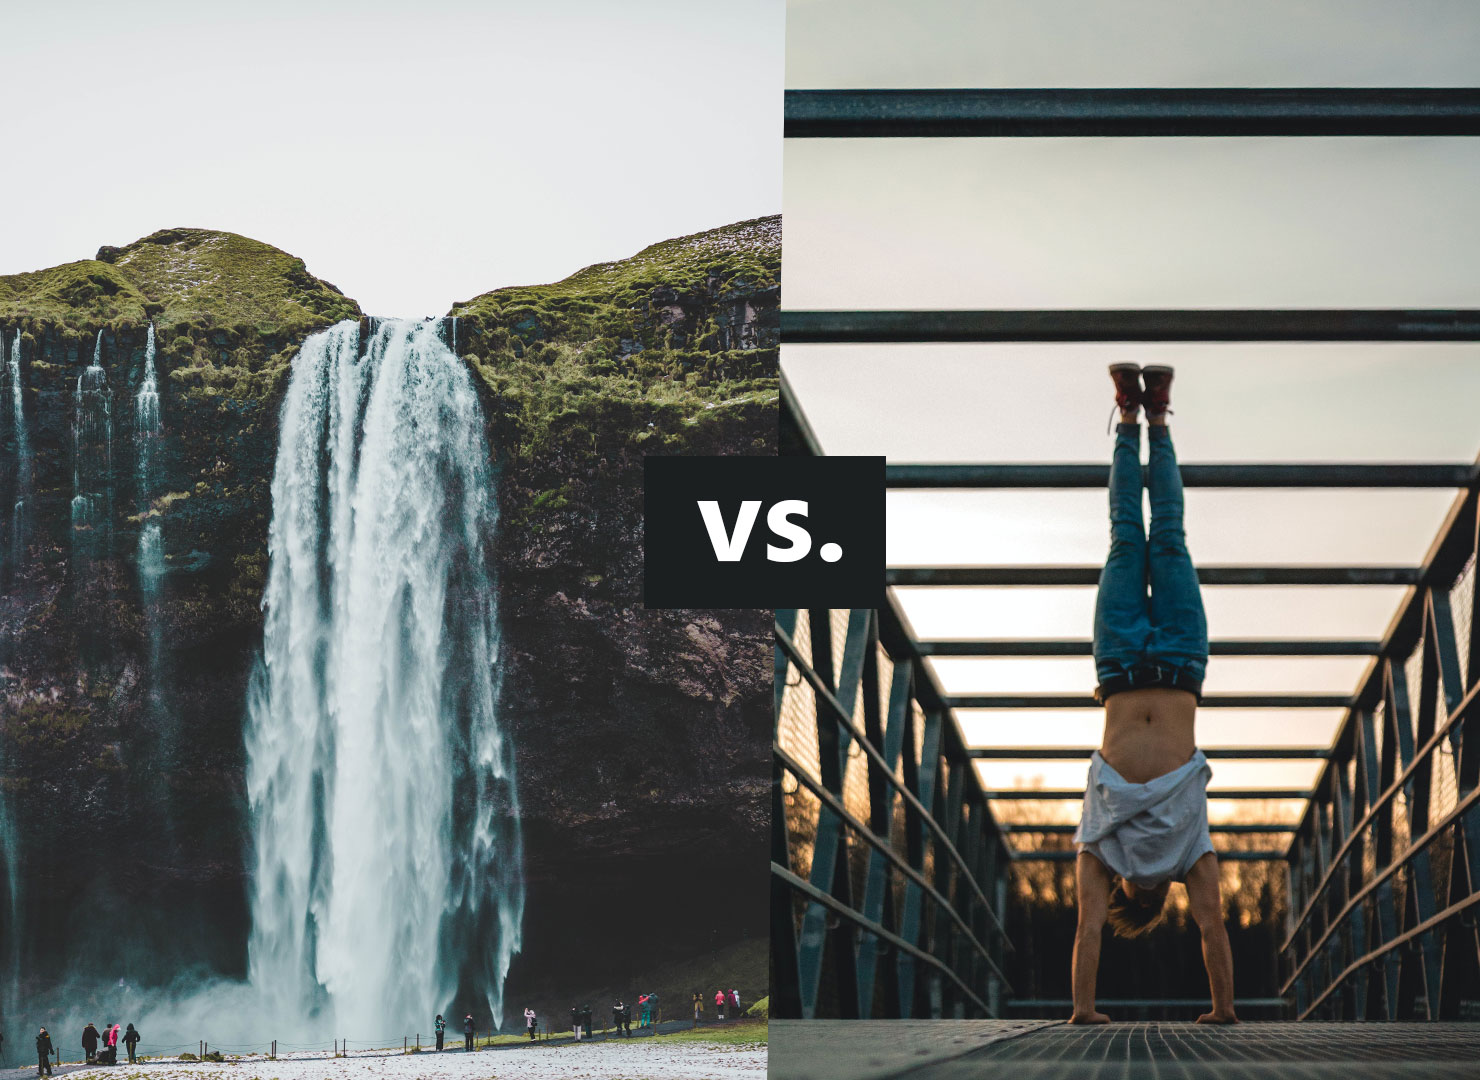 waterfall-vs-agile